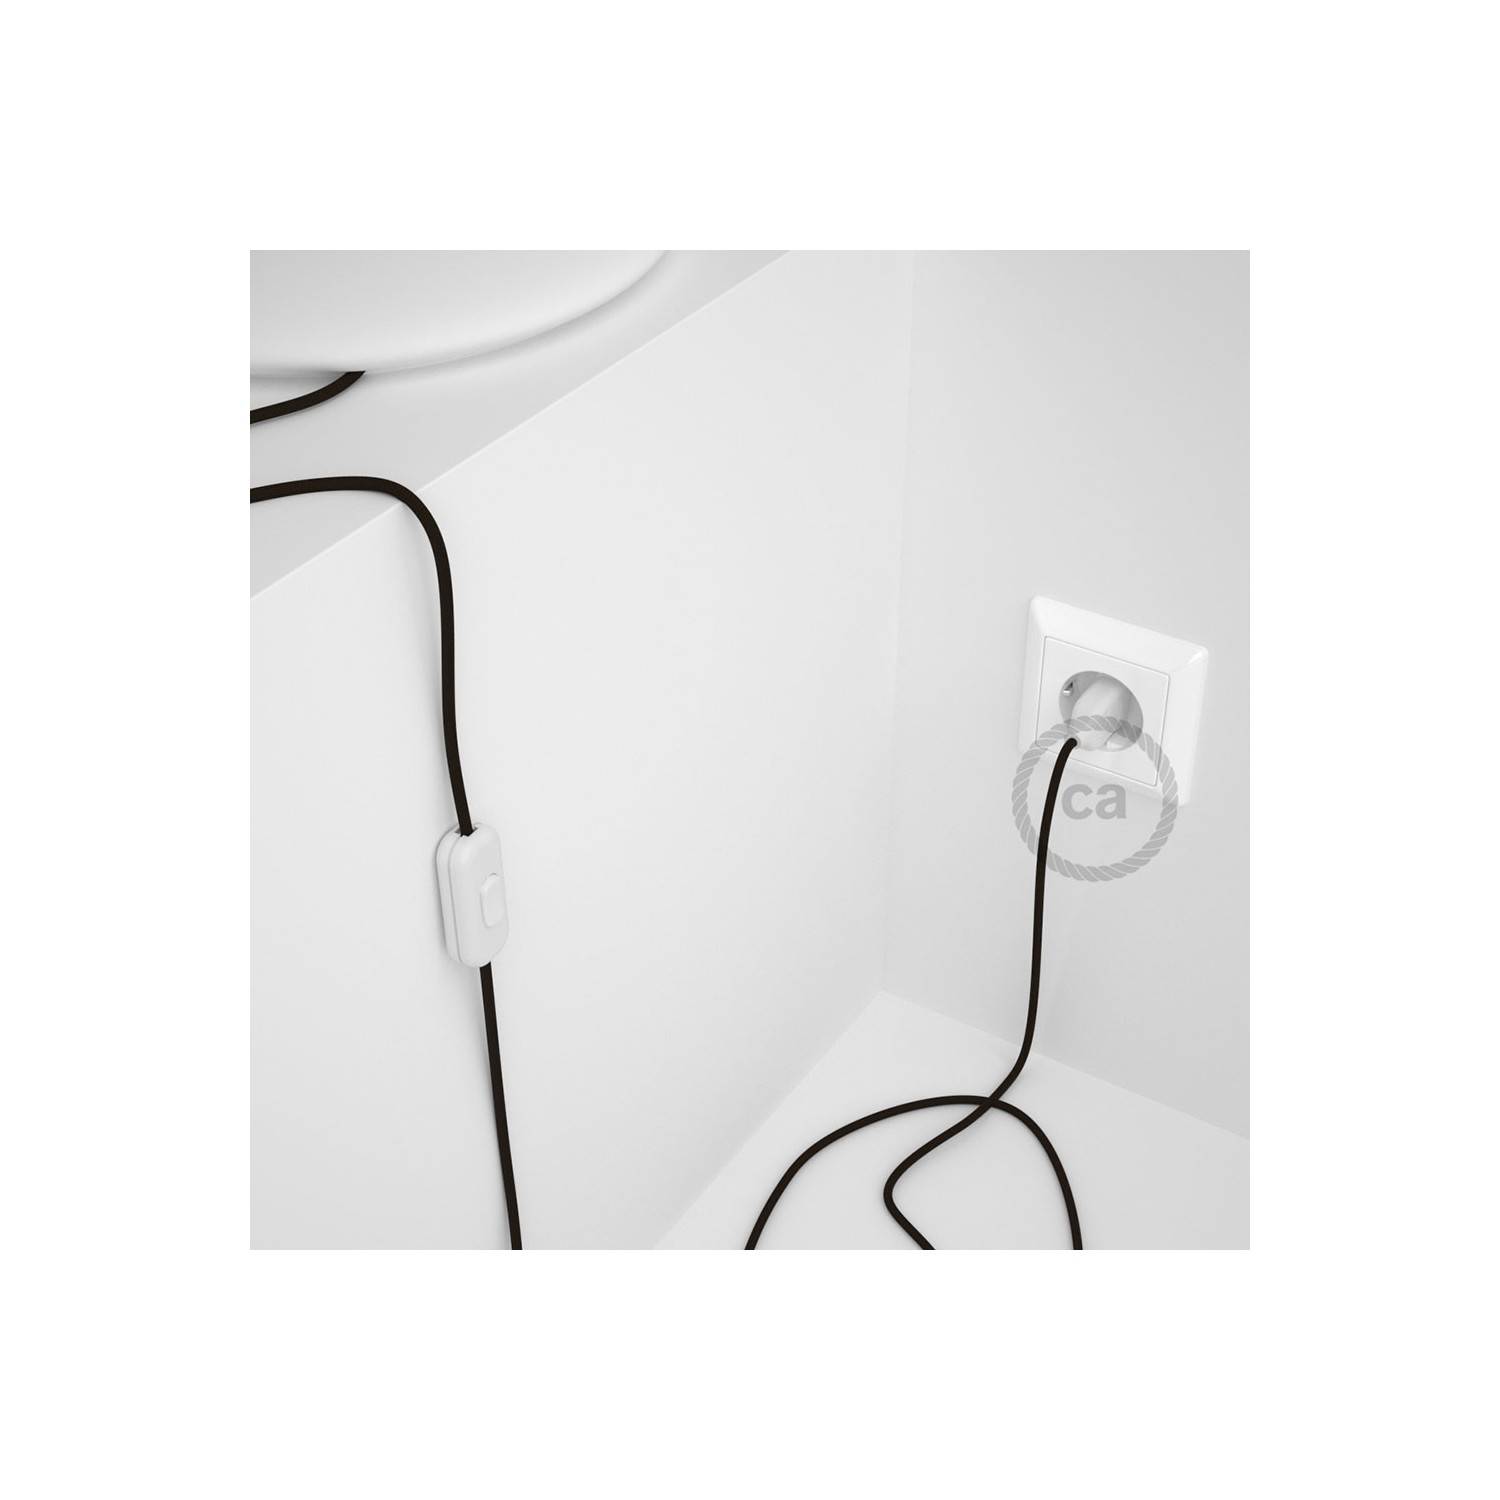 Cableado para lámpara, cable RM13 Efecto Seda Marrón 1,8m. Elige tu el color de la clavija y del interruptor!